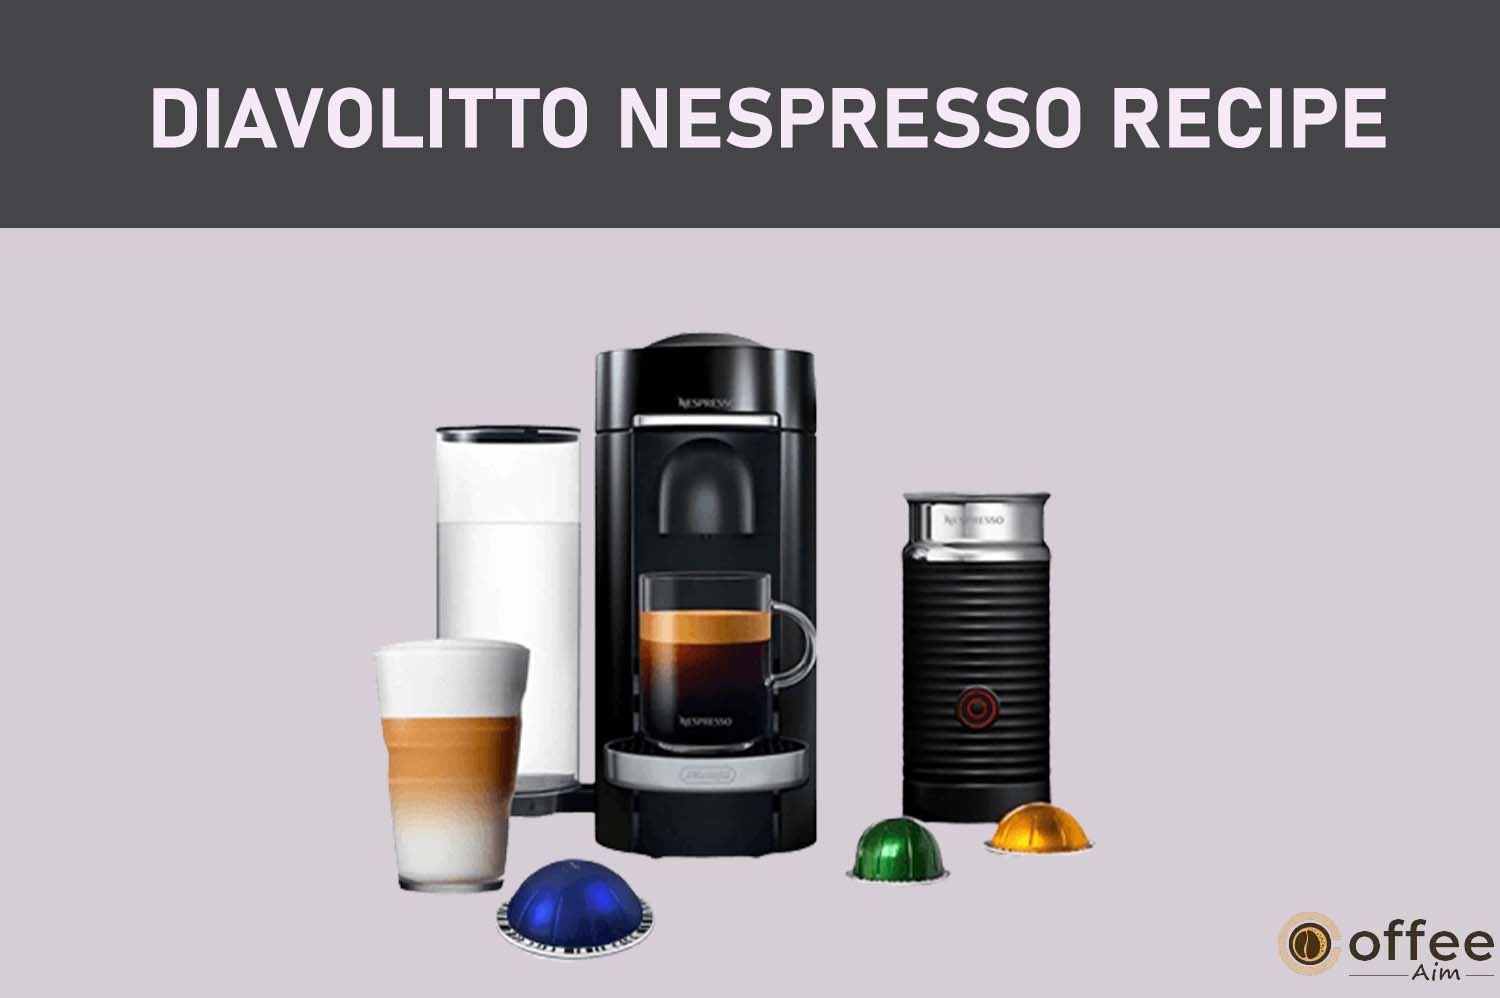 Featured image for the article "diavolitto nespresso Recipe"